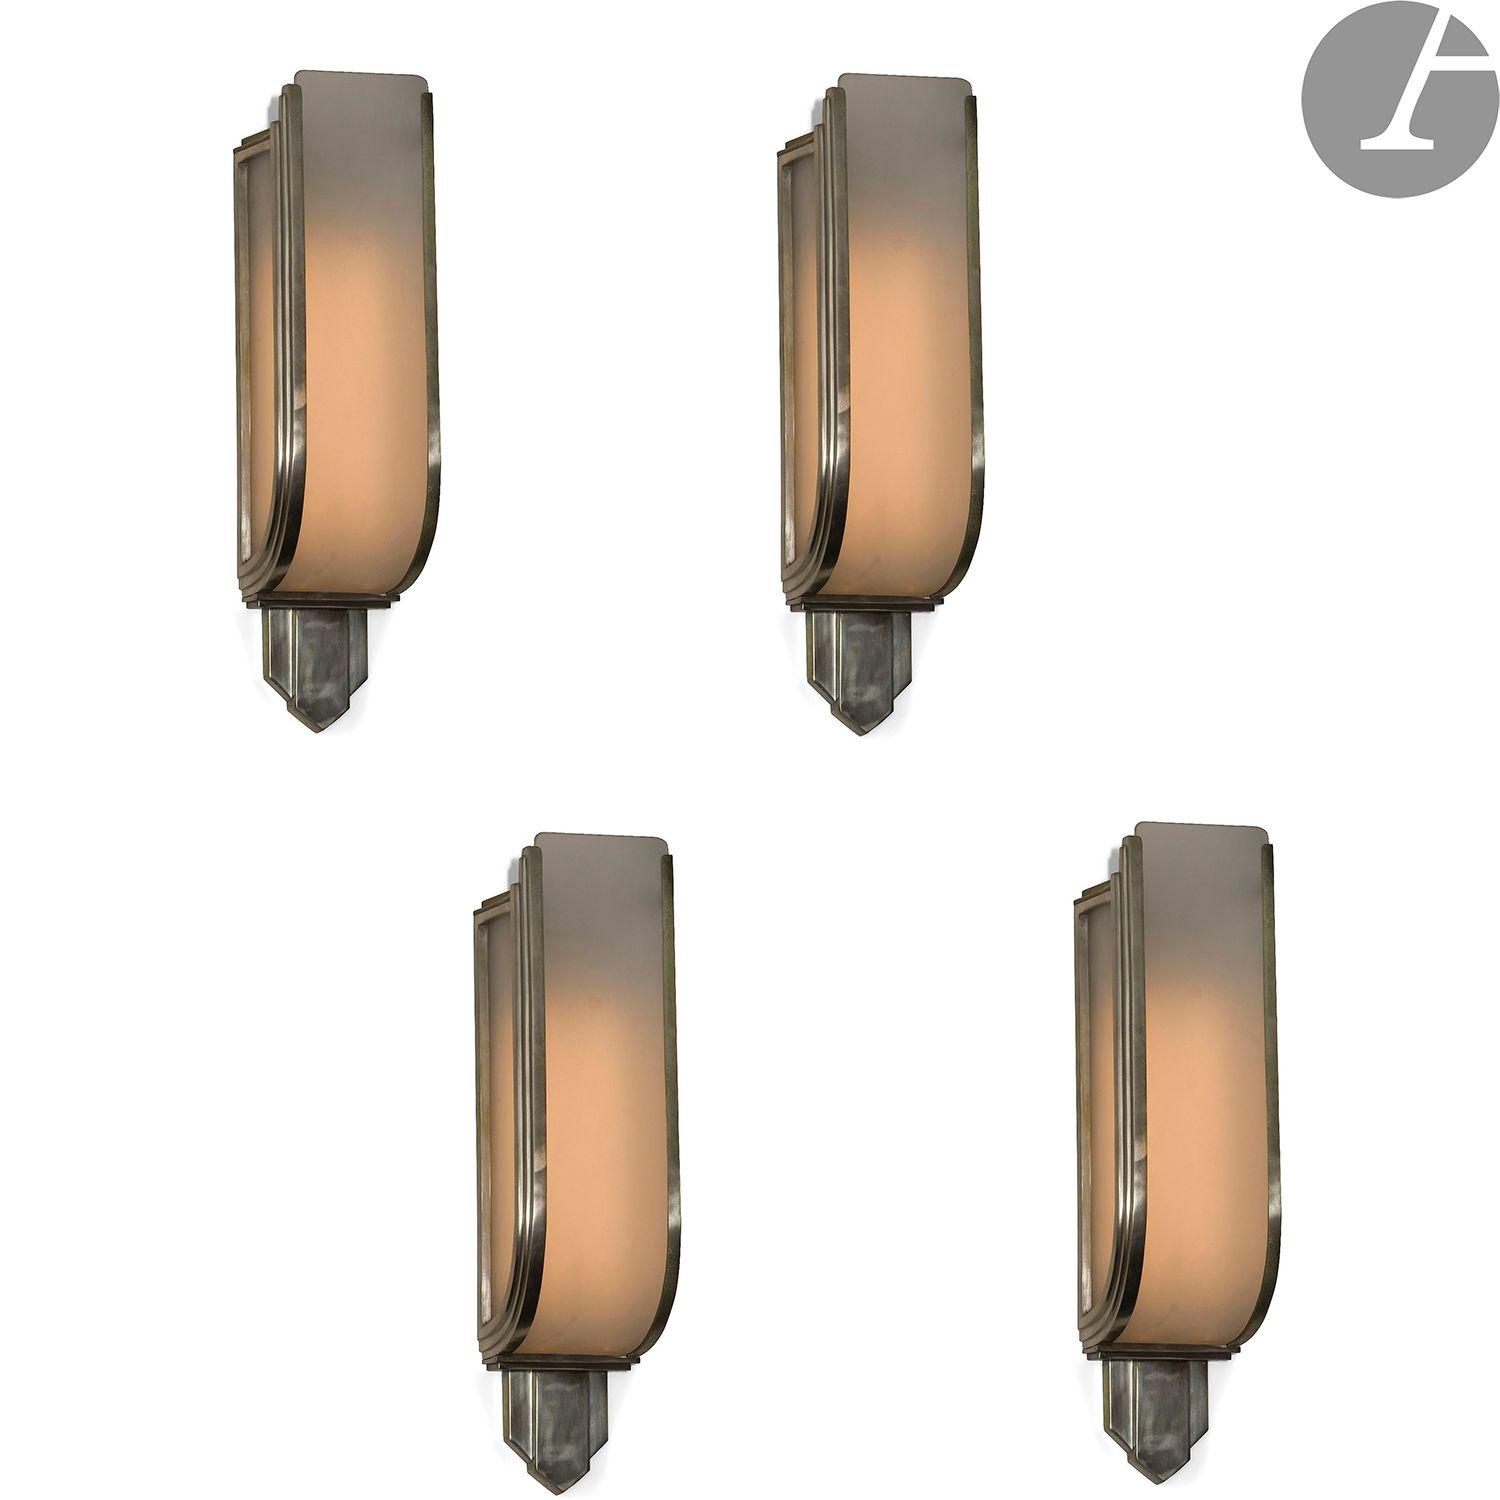 Null 艺术装饰风格 - 乔治-泰尔兹系列：
4个重要的现代主义灯具，镀镍金属和磨砂玻璃
。
 
高63厘米